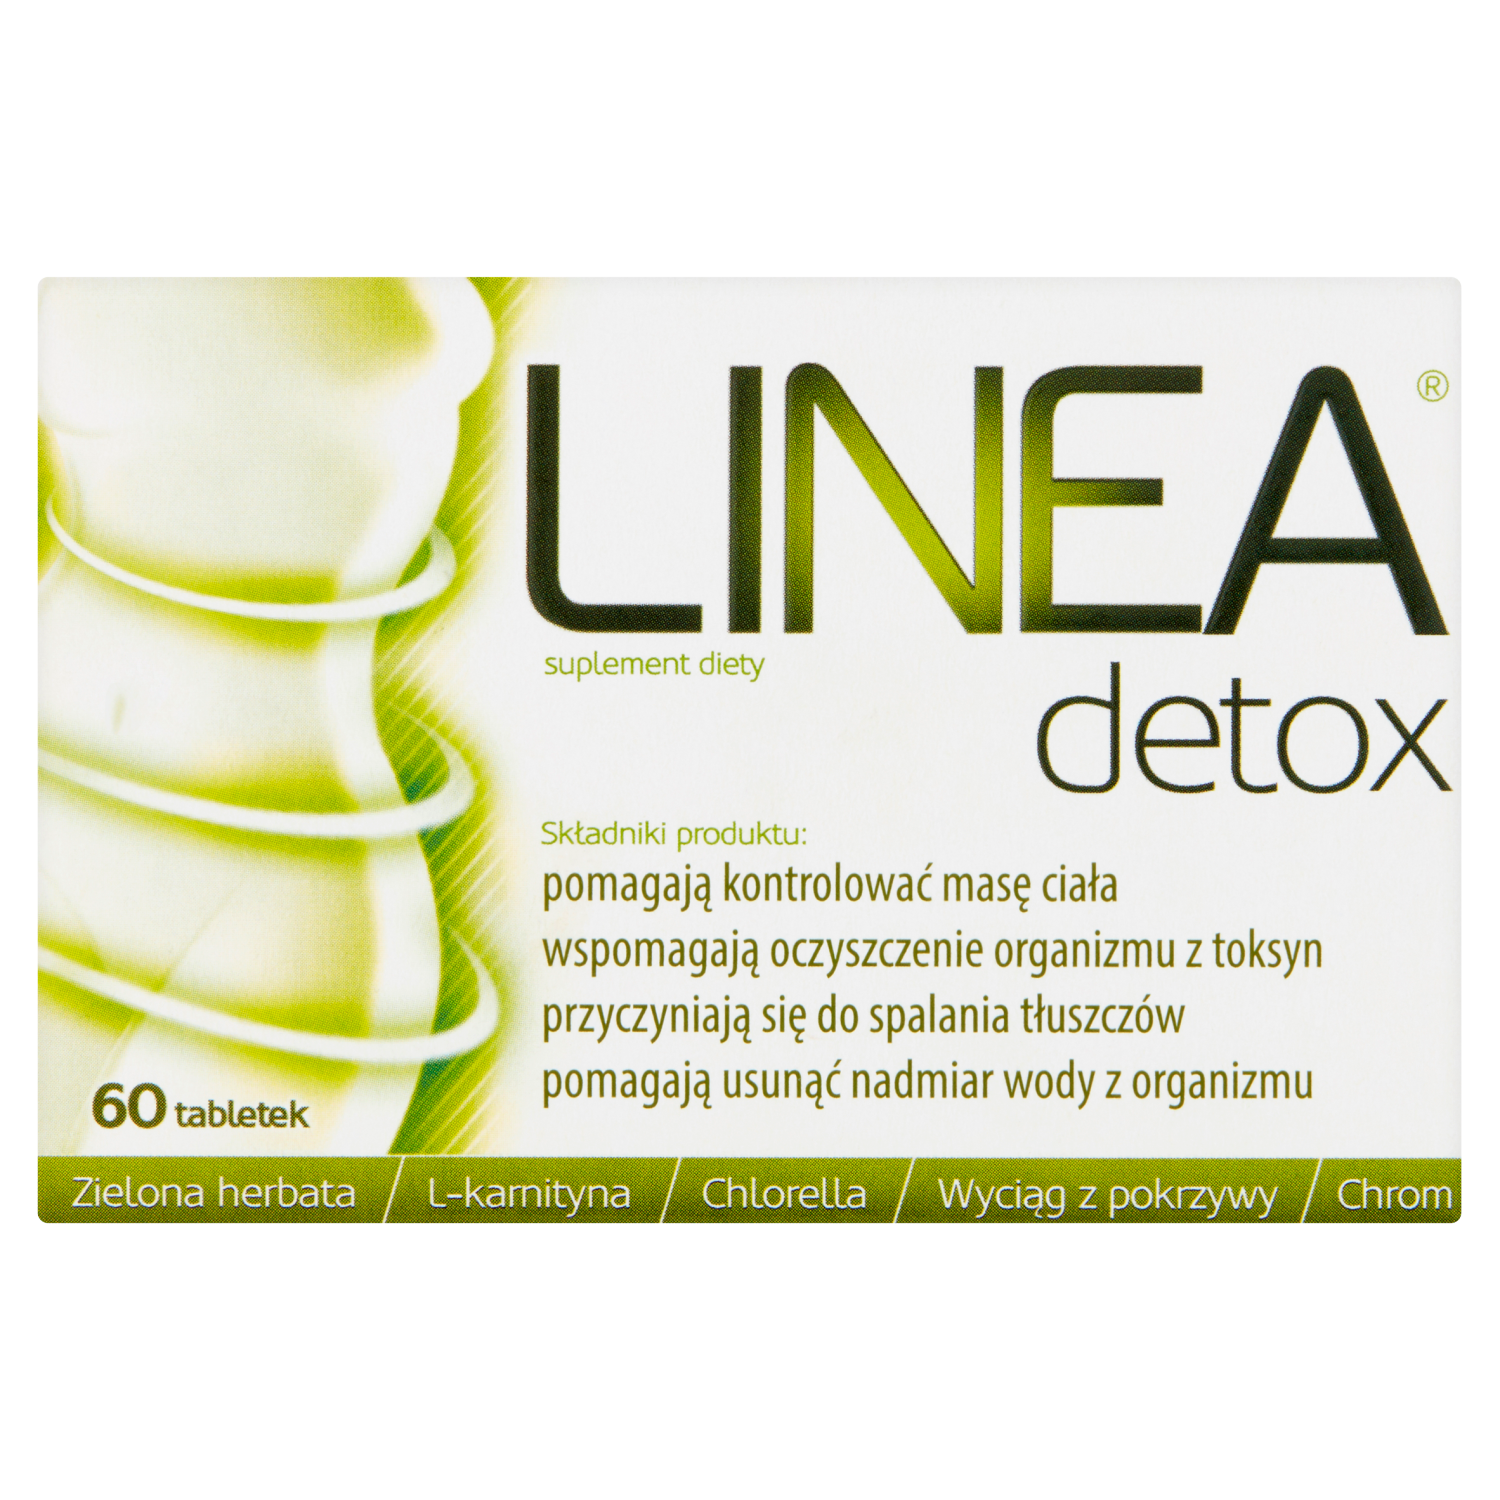 linea detox биологически активная добавка 60 таблеток 1 упаковка Linea Detox биологически активная добавка, 60 таблеток/1 упаковка